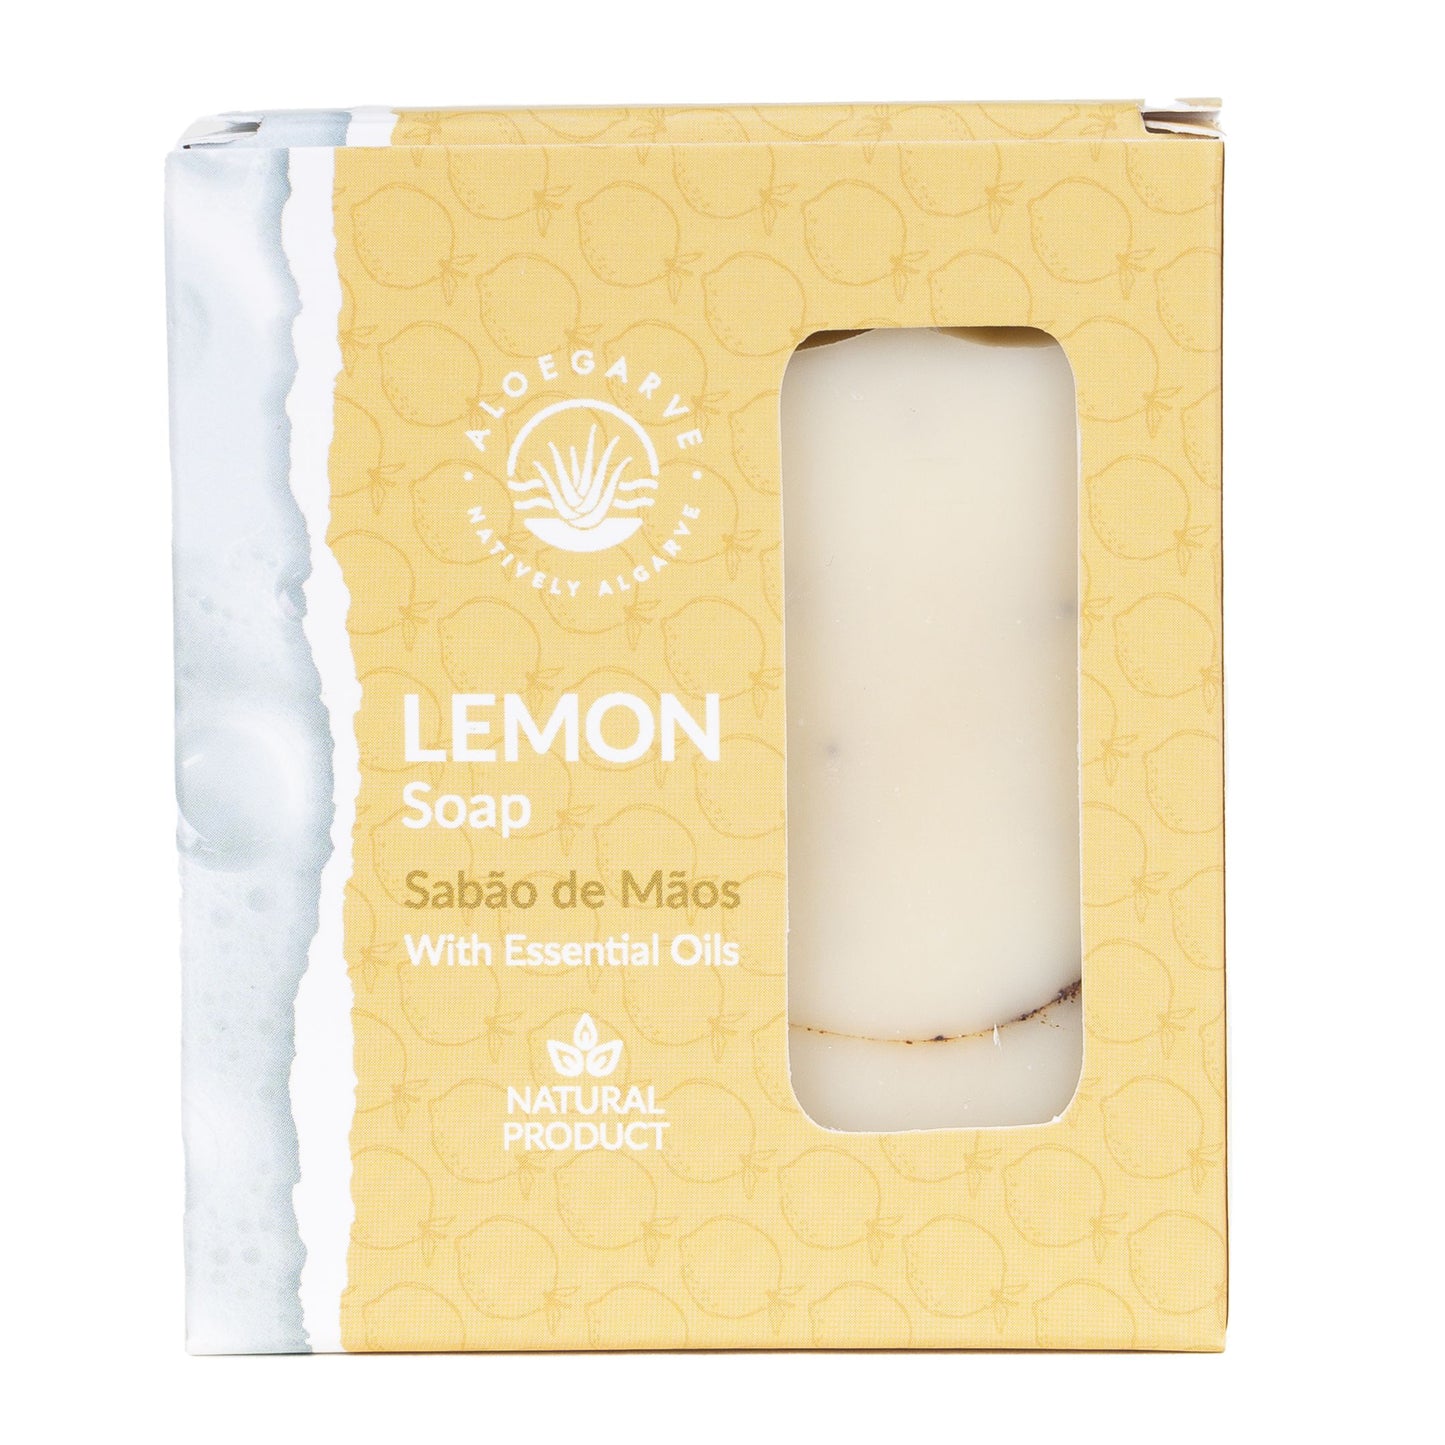 "Keep it Lemon" - Lemon Soap Bar 100g